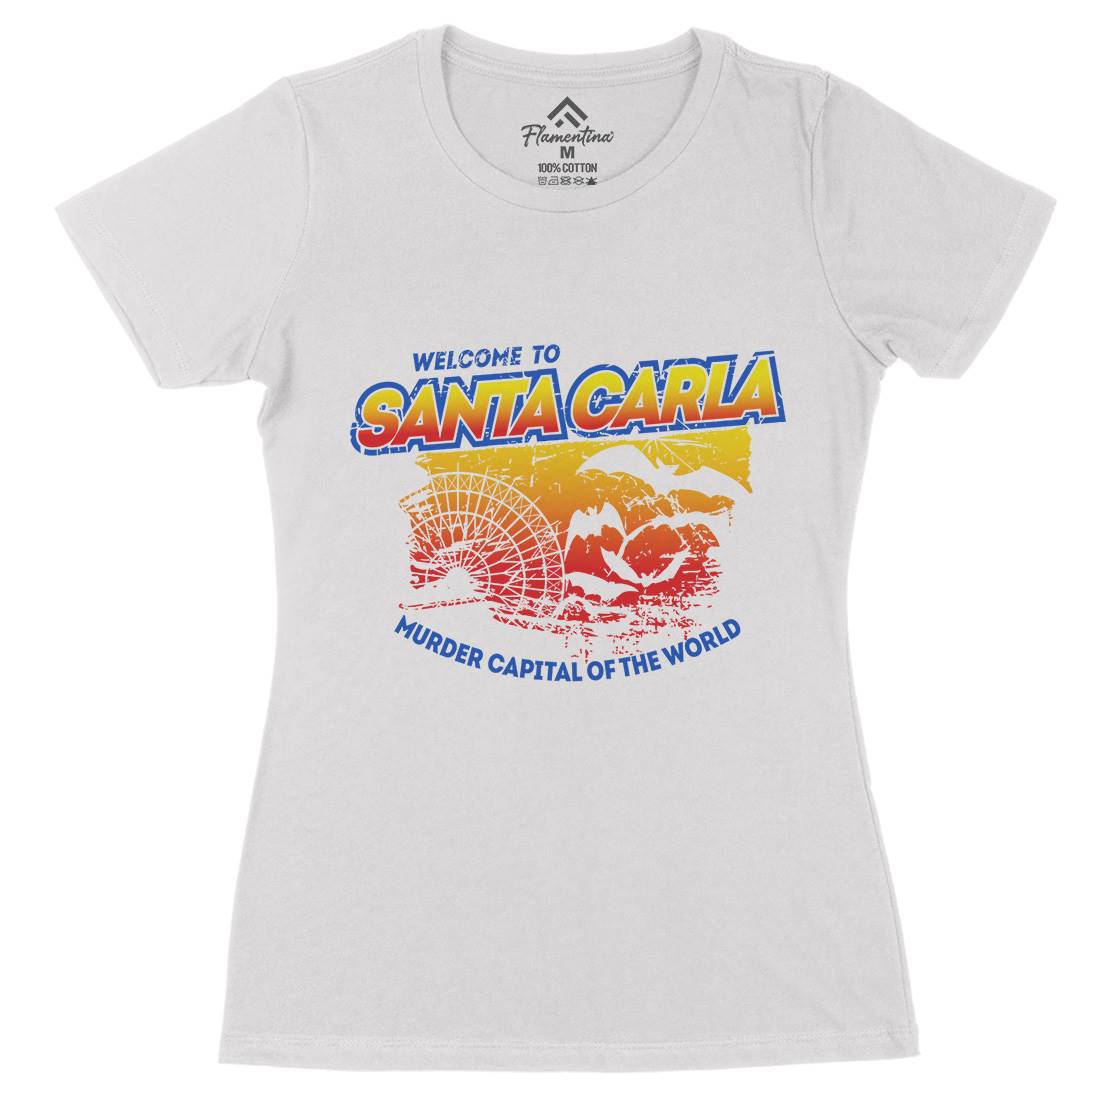 Santa Carla Womens Organic Crew Neck T-Shirt Horror D369